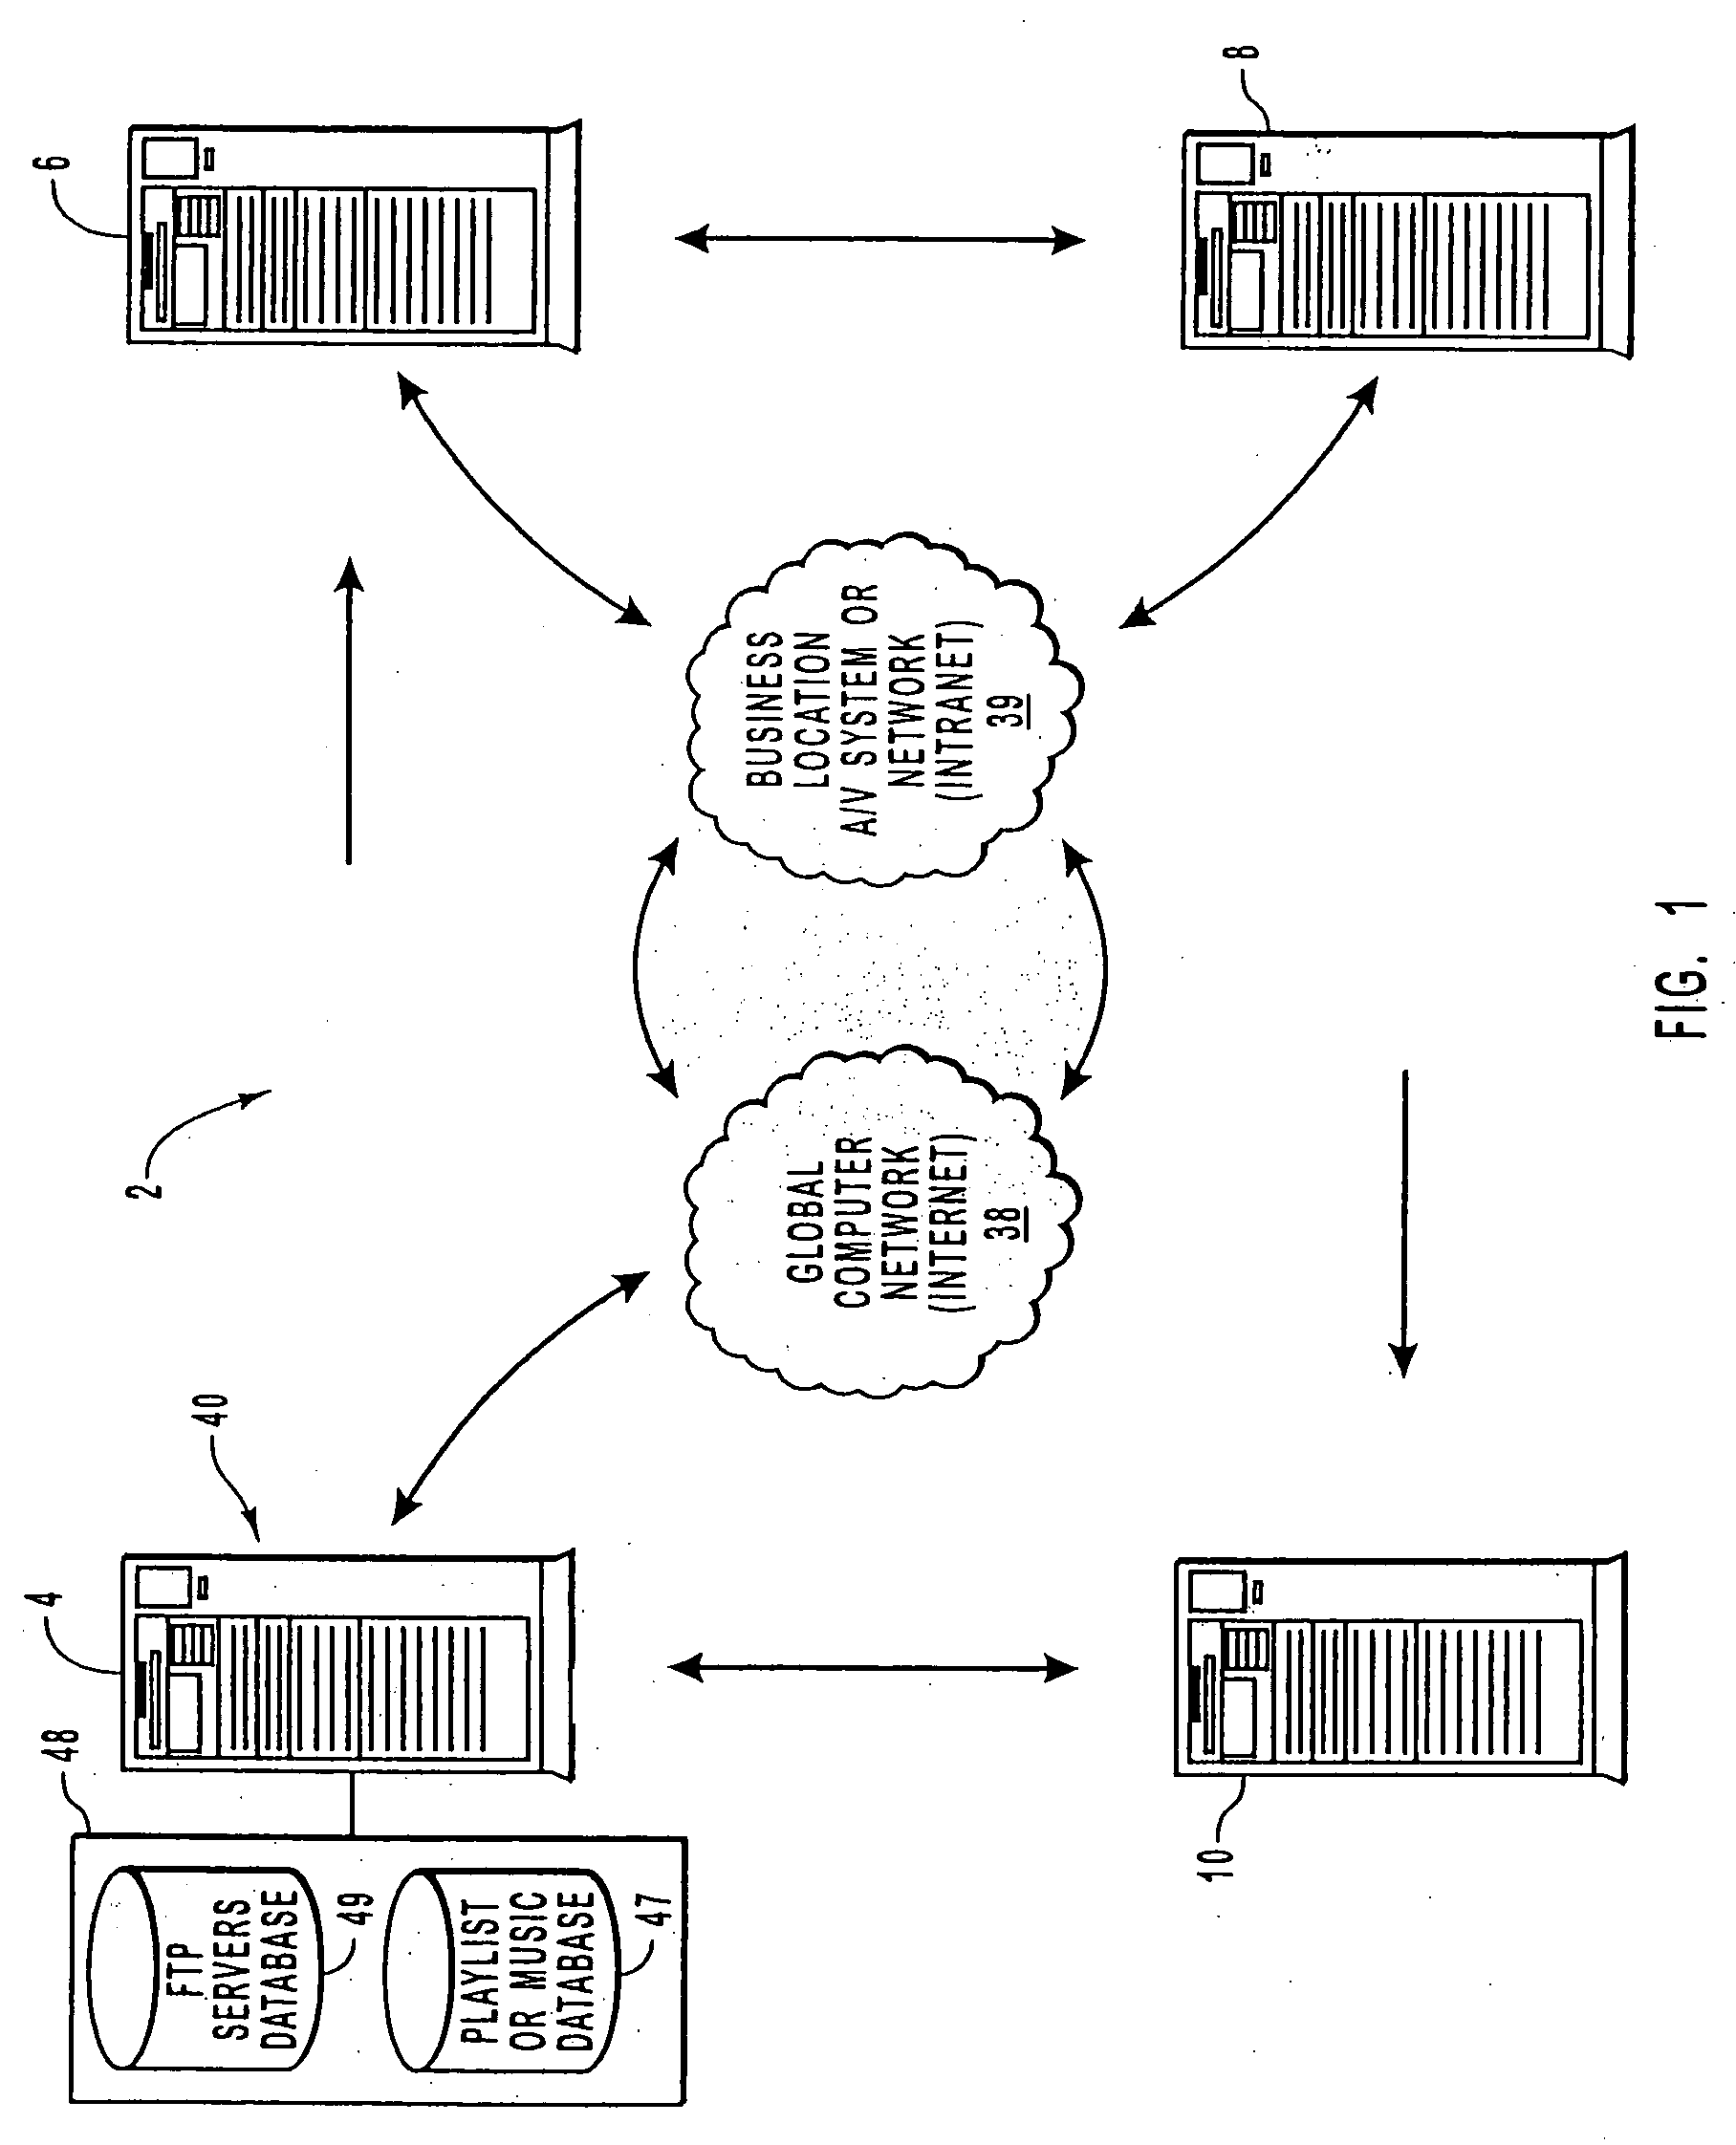 System and method for computer network-based enterprise media distribution